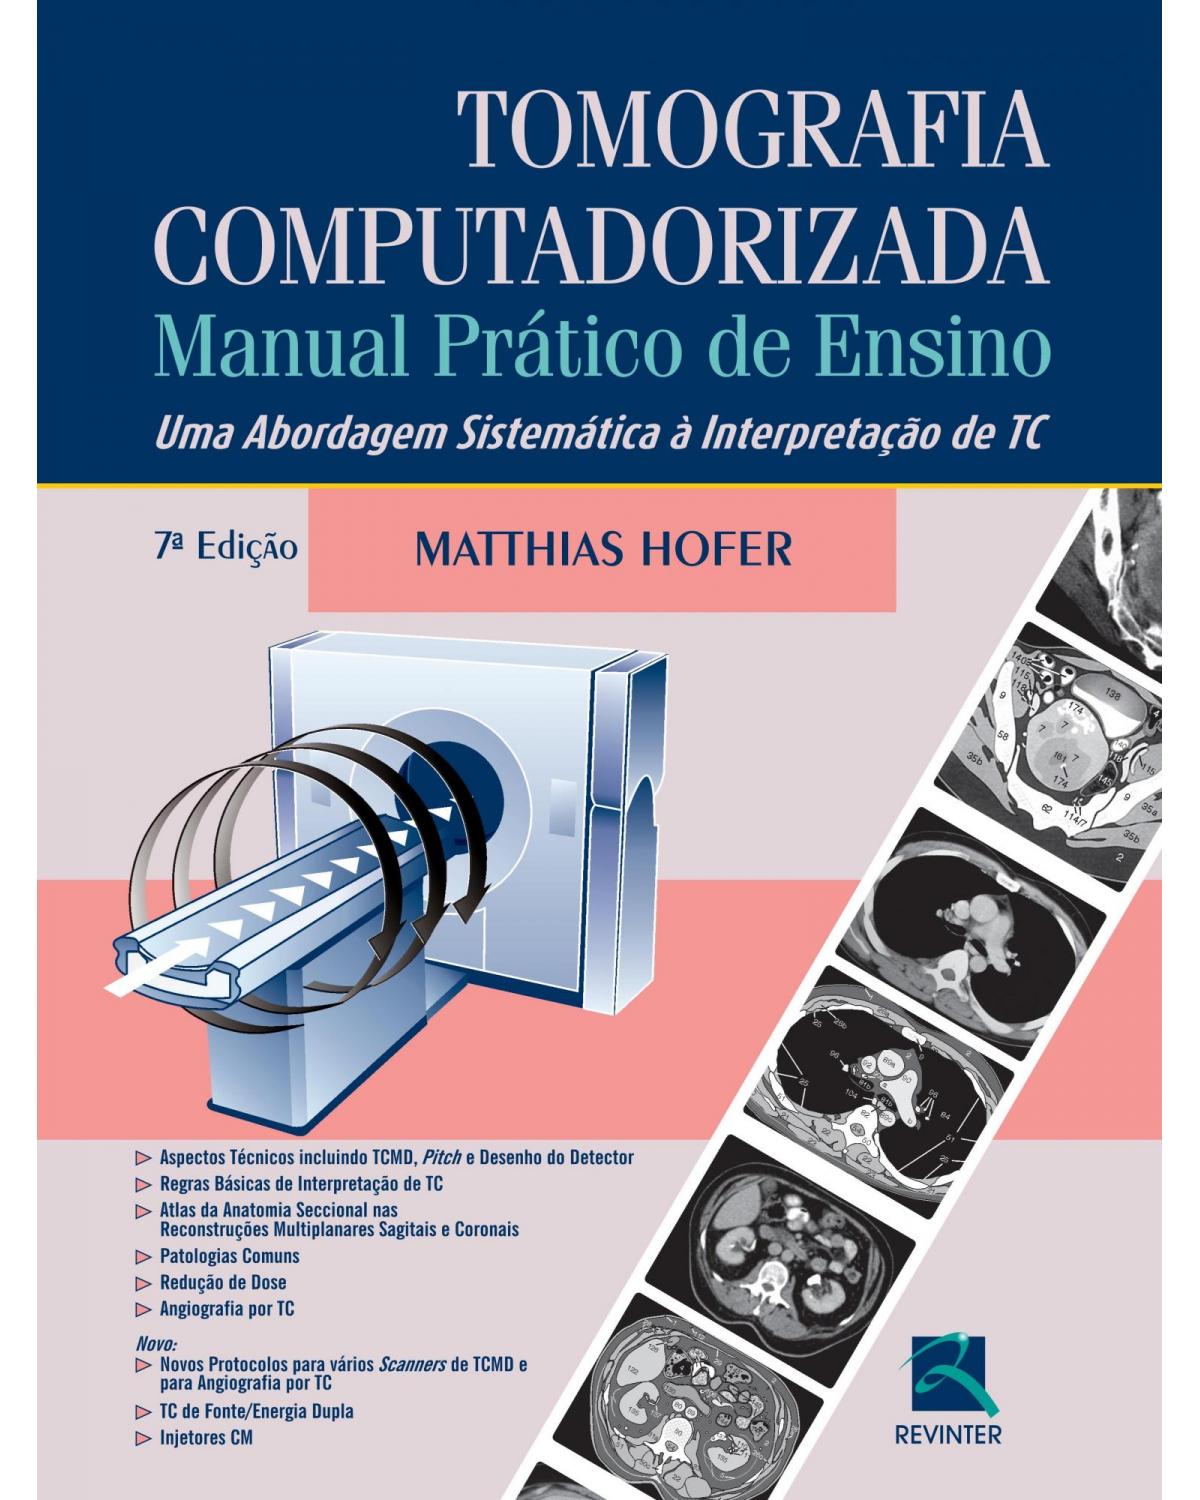 Tomografia computadorizada - manual prático de ensino - Uma abordagem sistemática à interpretação de TC - 7ª Edição | 2015